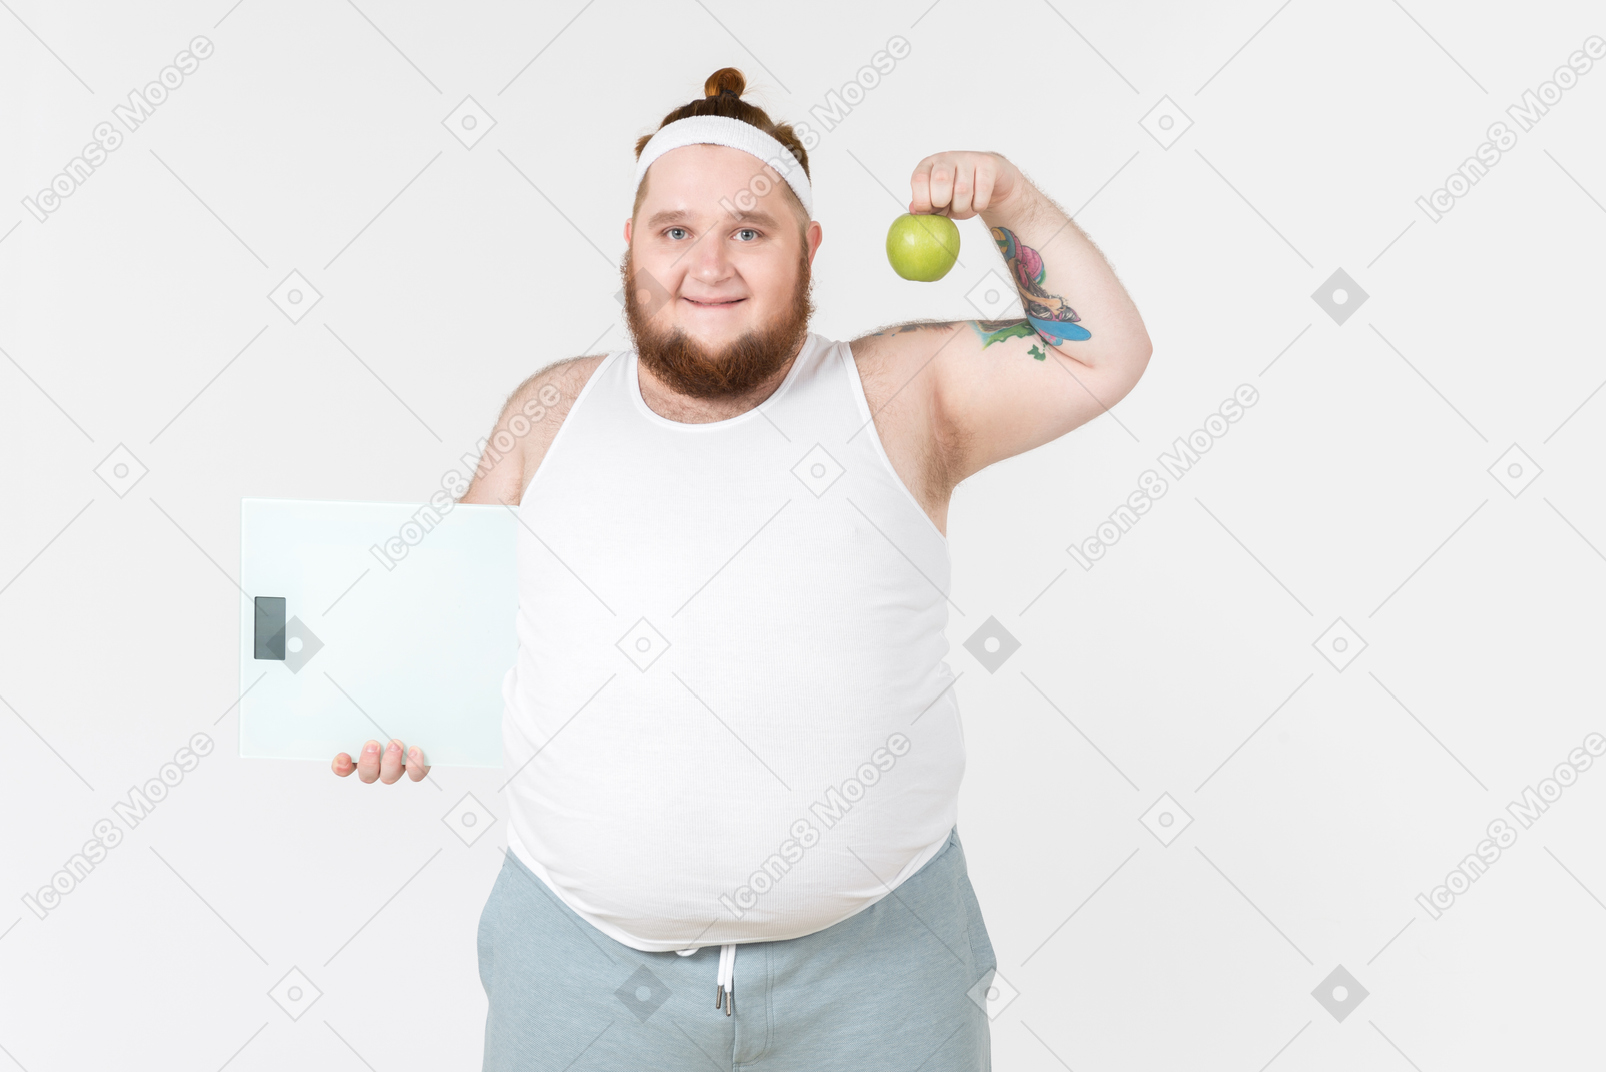 Ragazzo grosso in abbigliamento sportivo con bilance e mela